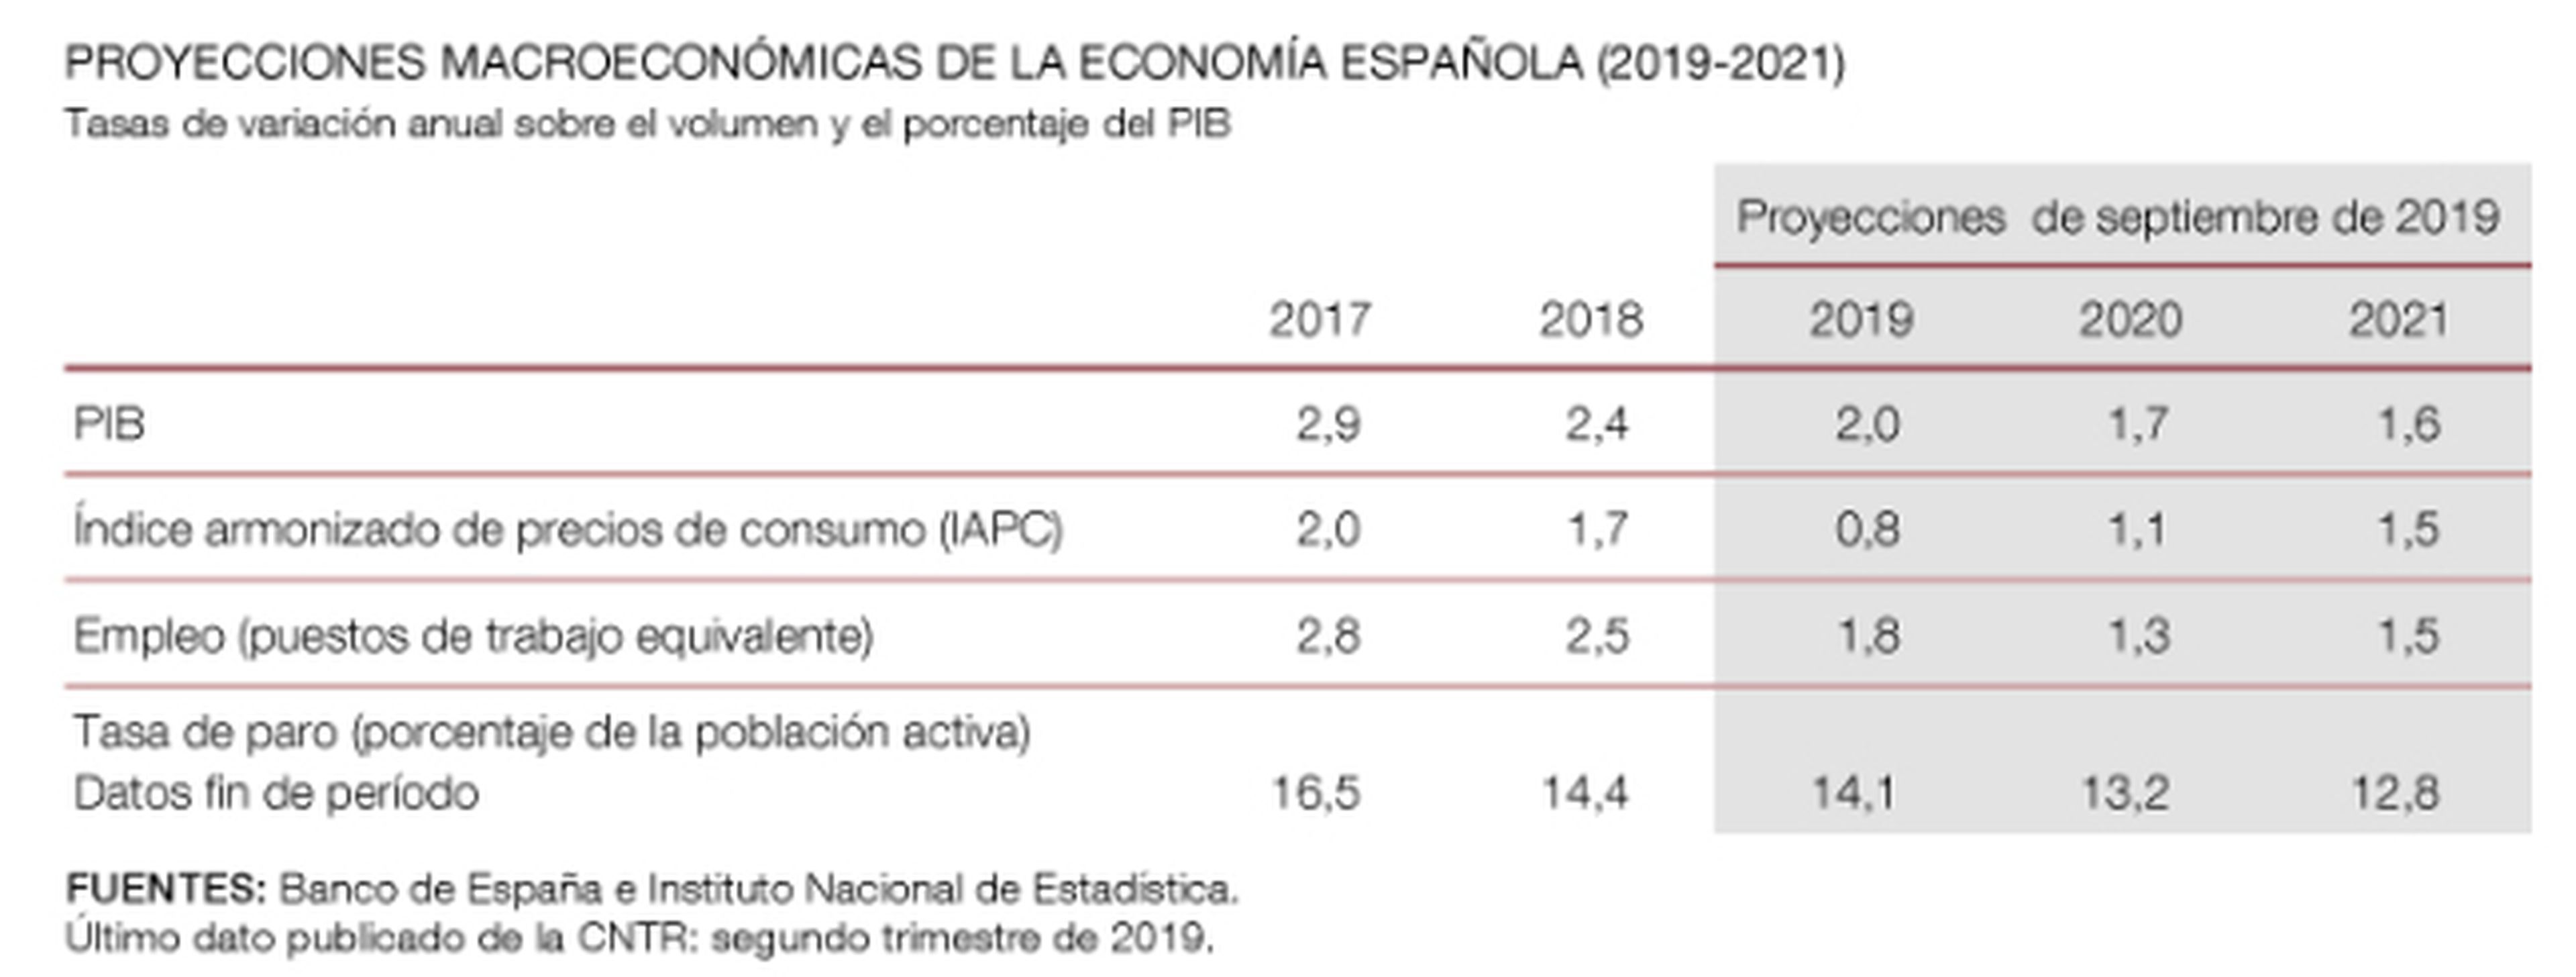 Proyecciones de septiembre del Banco de España